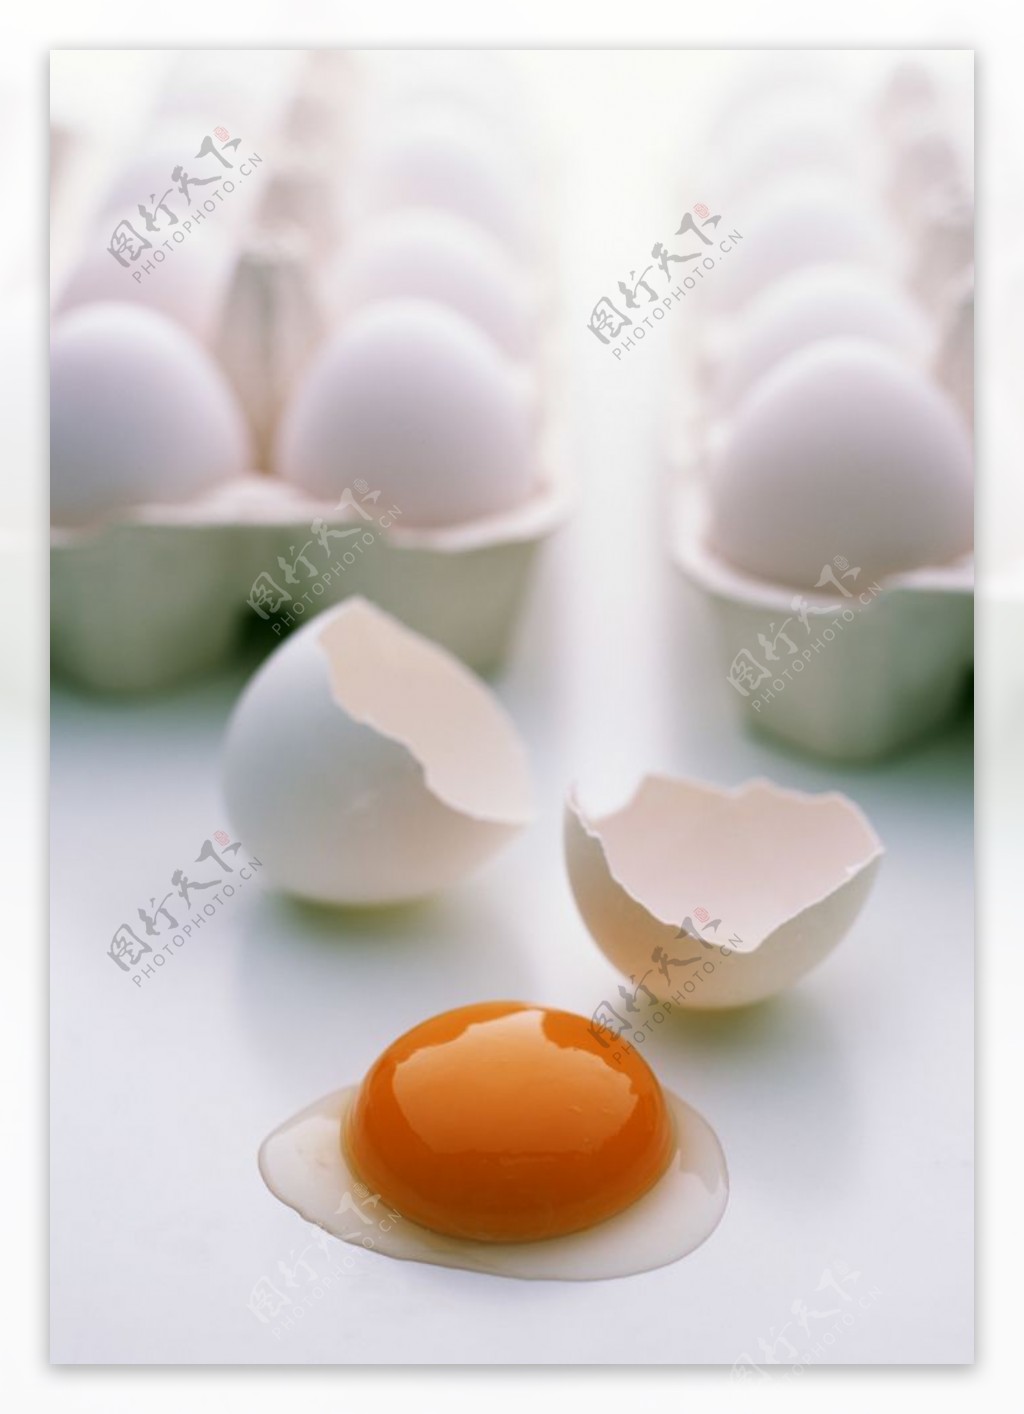 新鲜蛋类